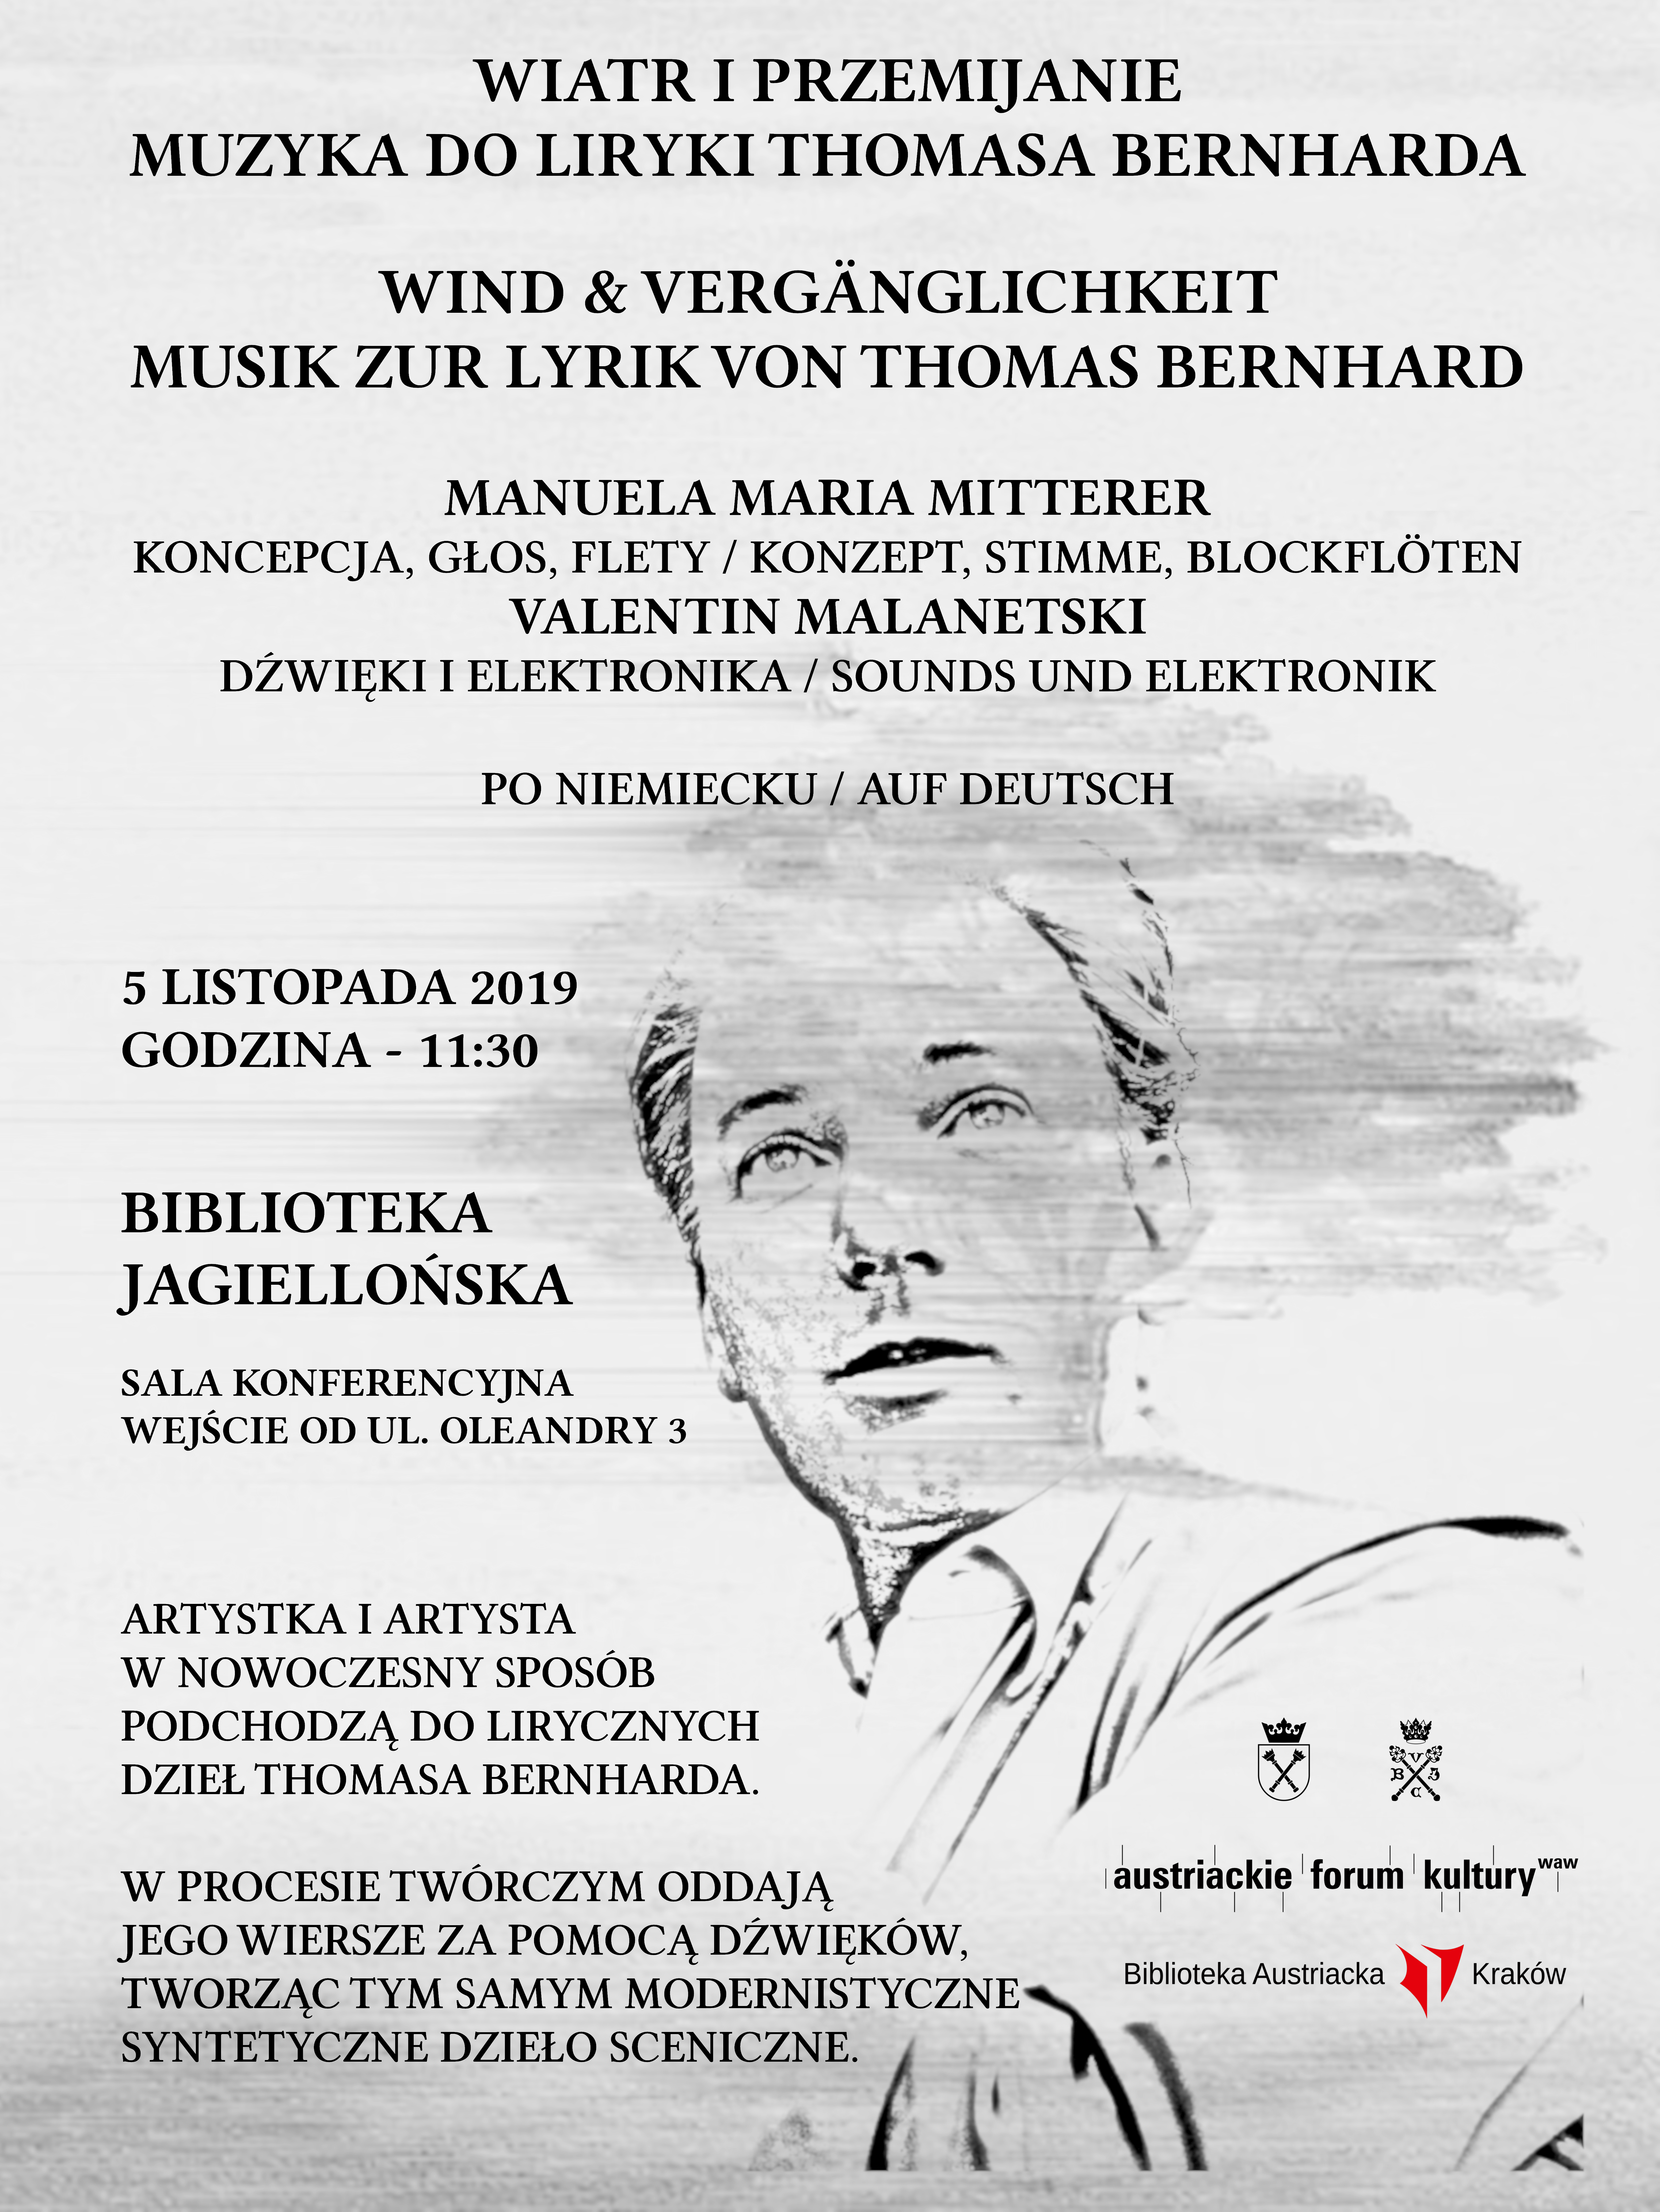 Plakat informujący o wydarzeniu Wiatr i przemijanie – Muzyka do liryki Thomasa Bernharda. Pełne informacje znajdują się nad grafiką